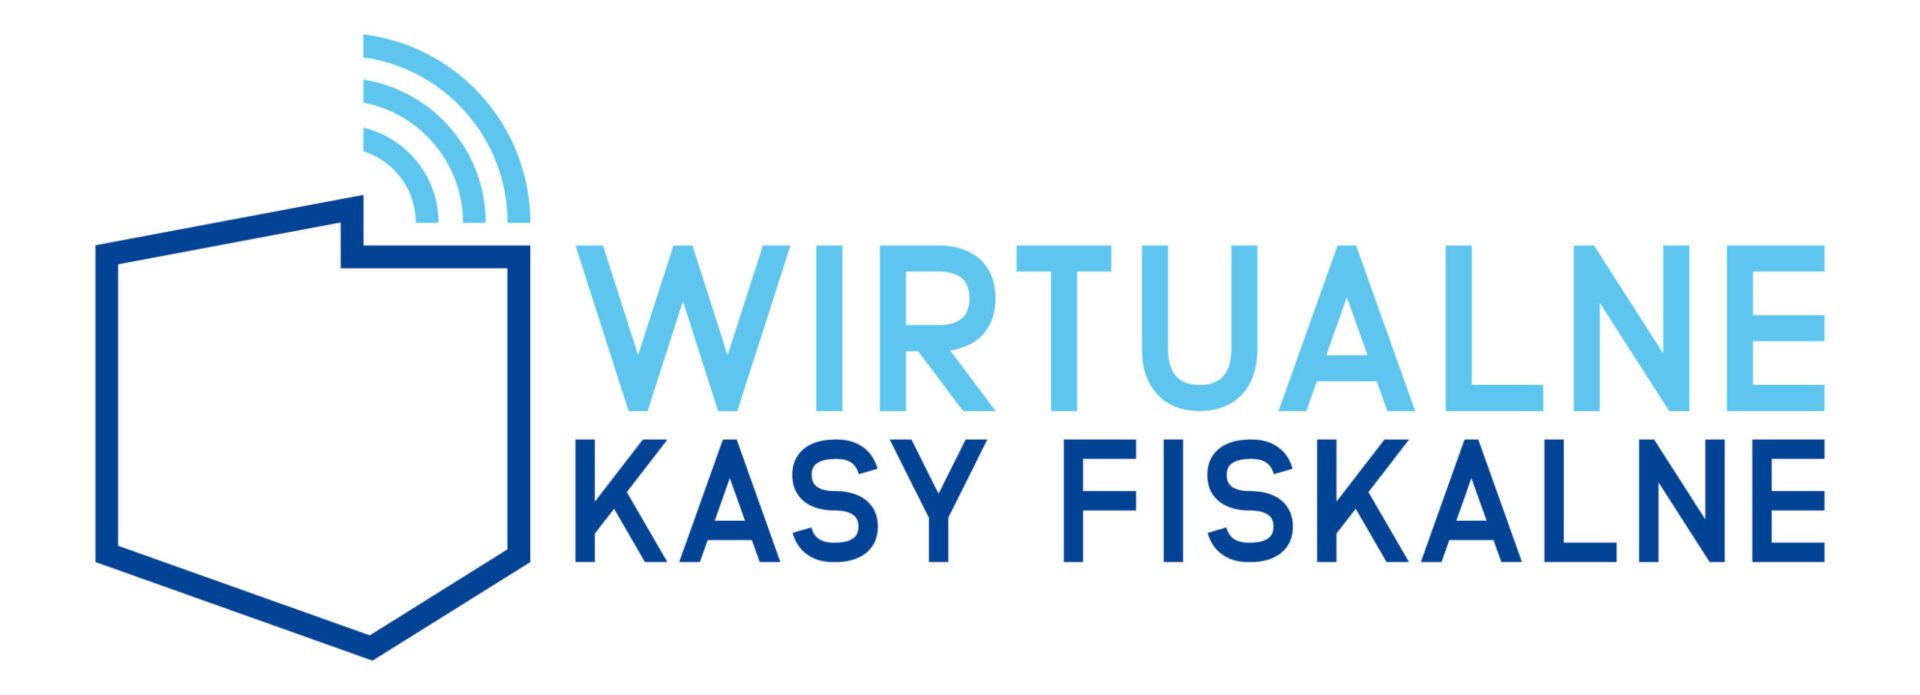 Wirtualne Kasy Fiskalne - logotyp